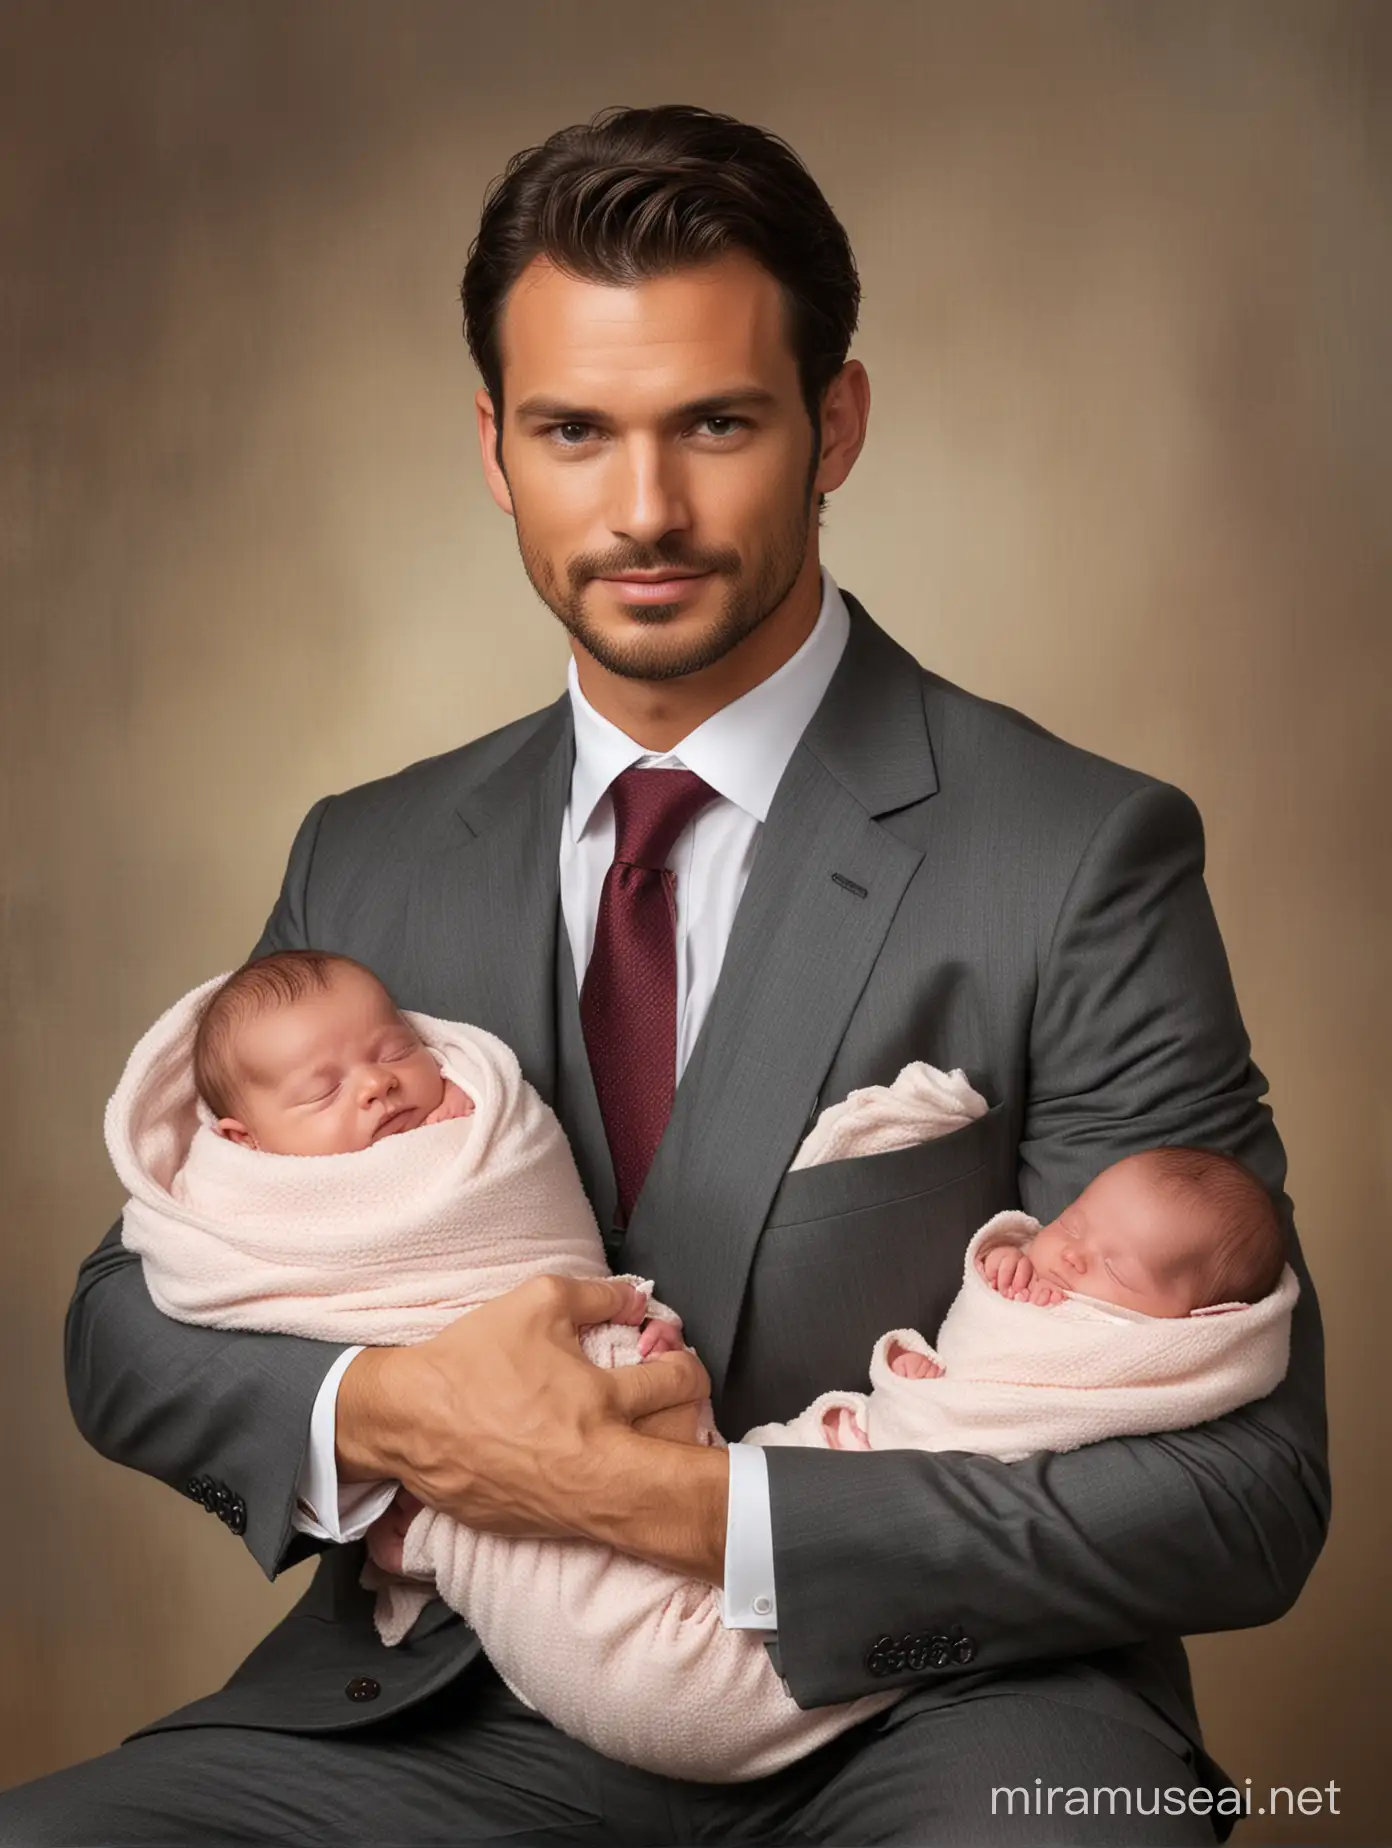 Очень красивый, мужественный мужчина авторитет, сидит и держит в руках двоих новорожденных малышей